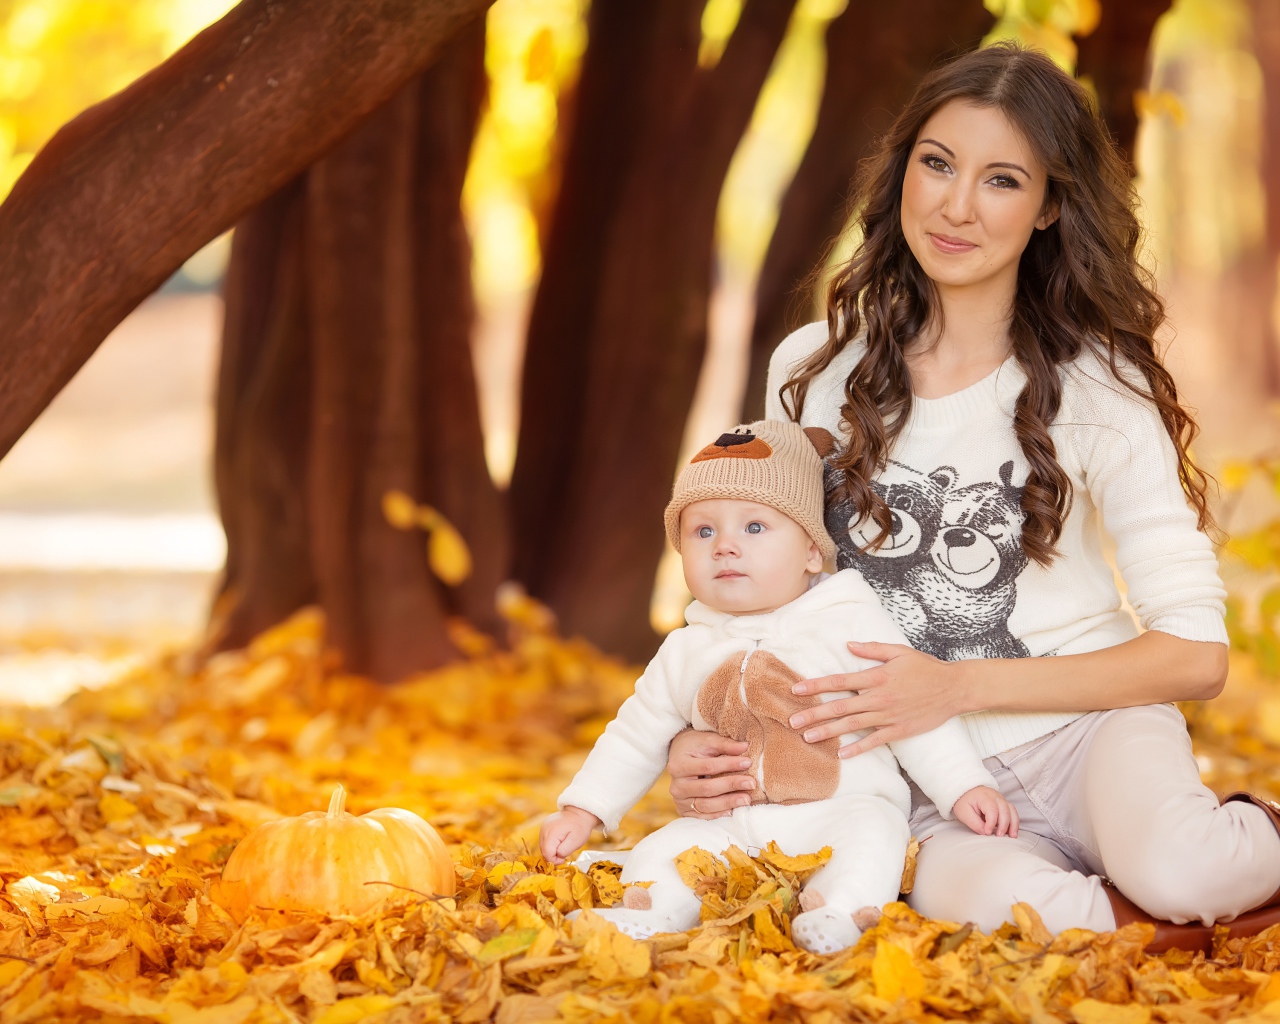 Красивая девушка сидит с грудным ребенком на опавшей листве